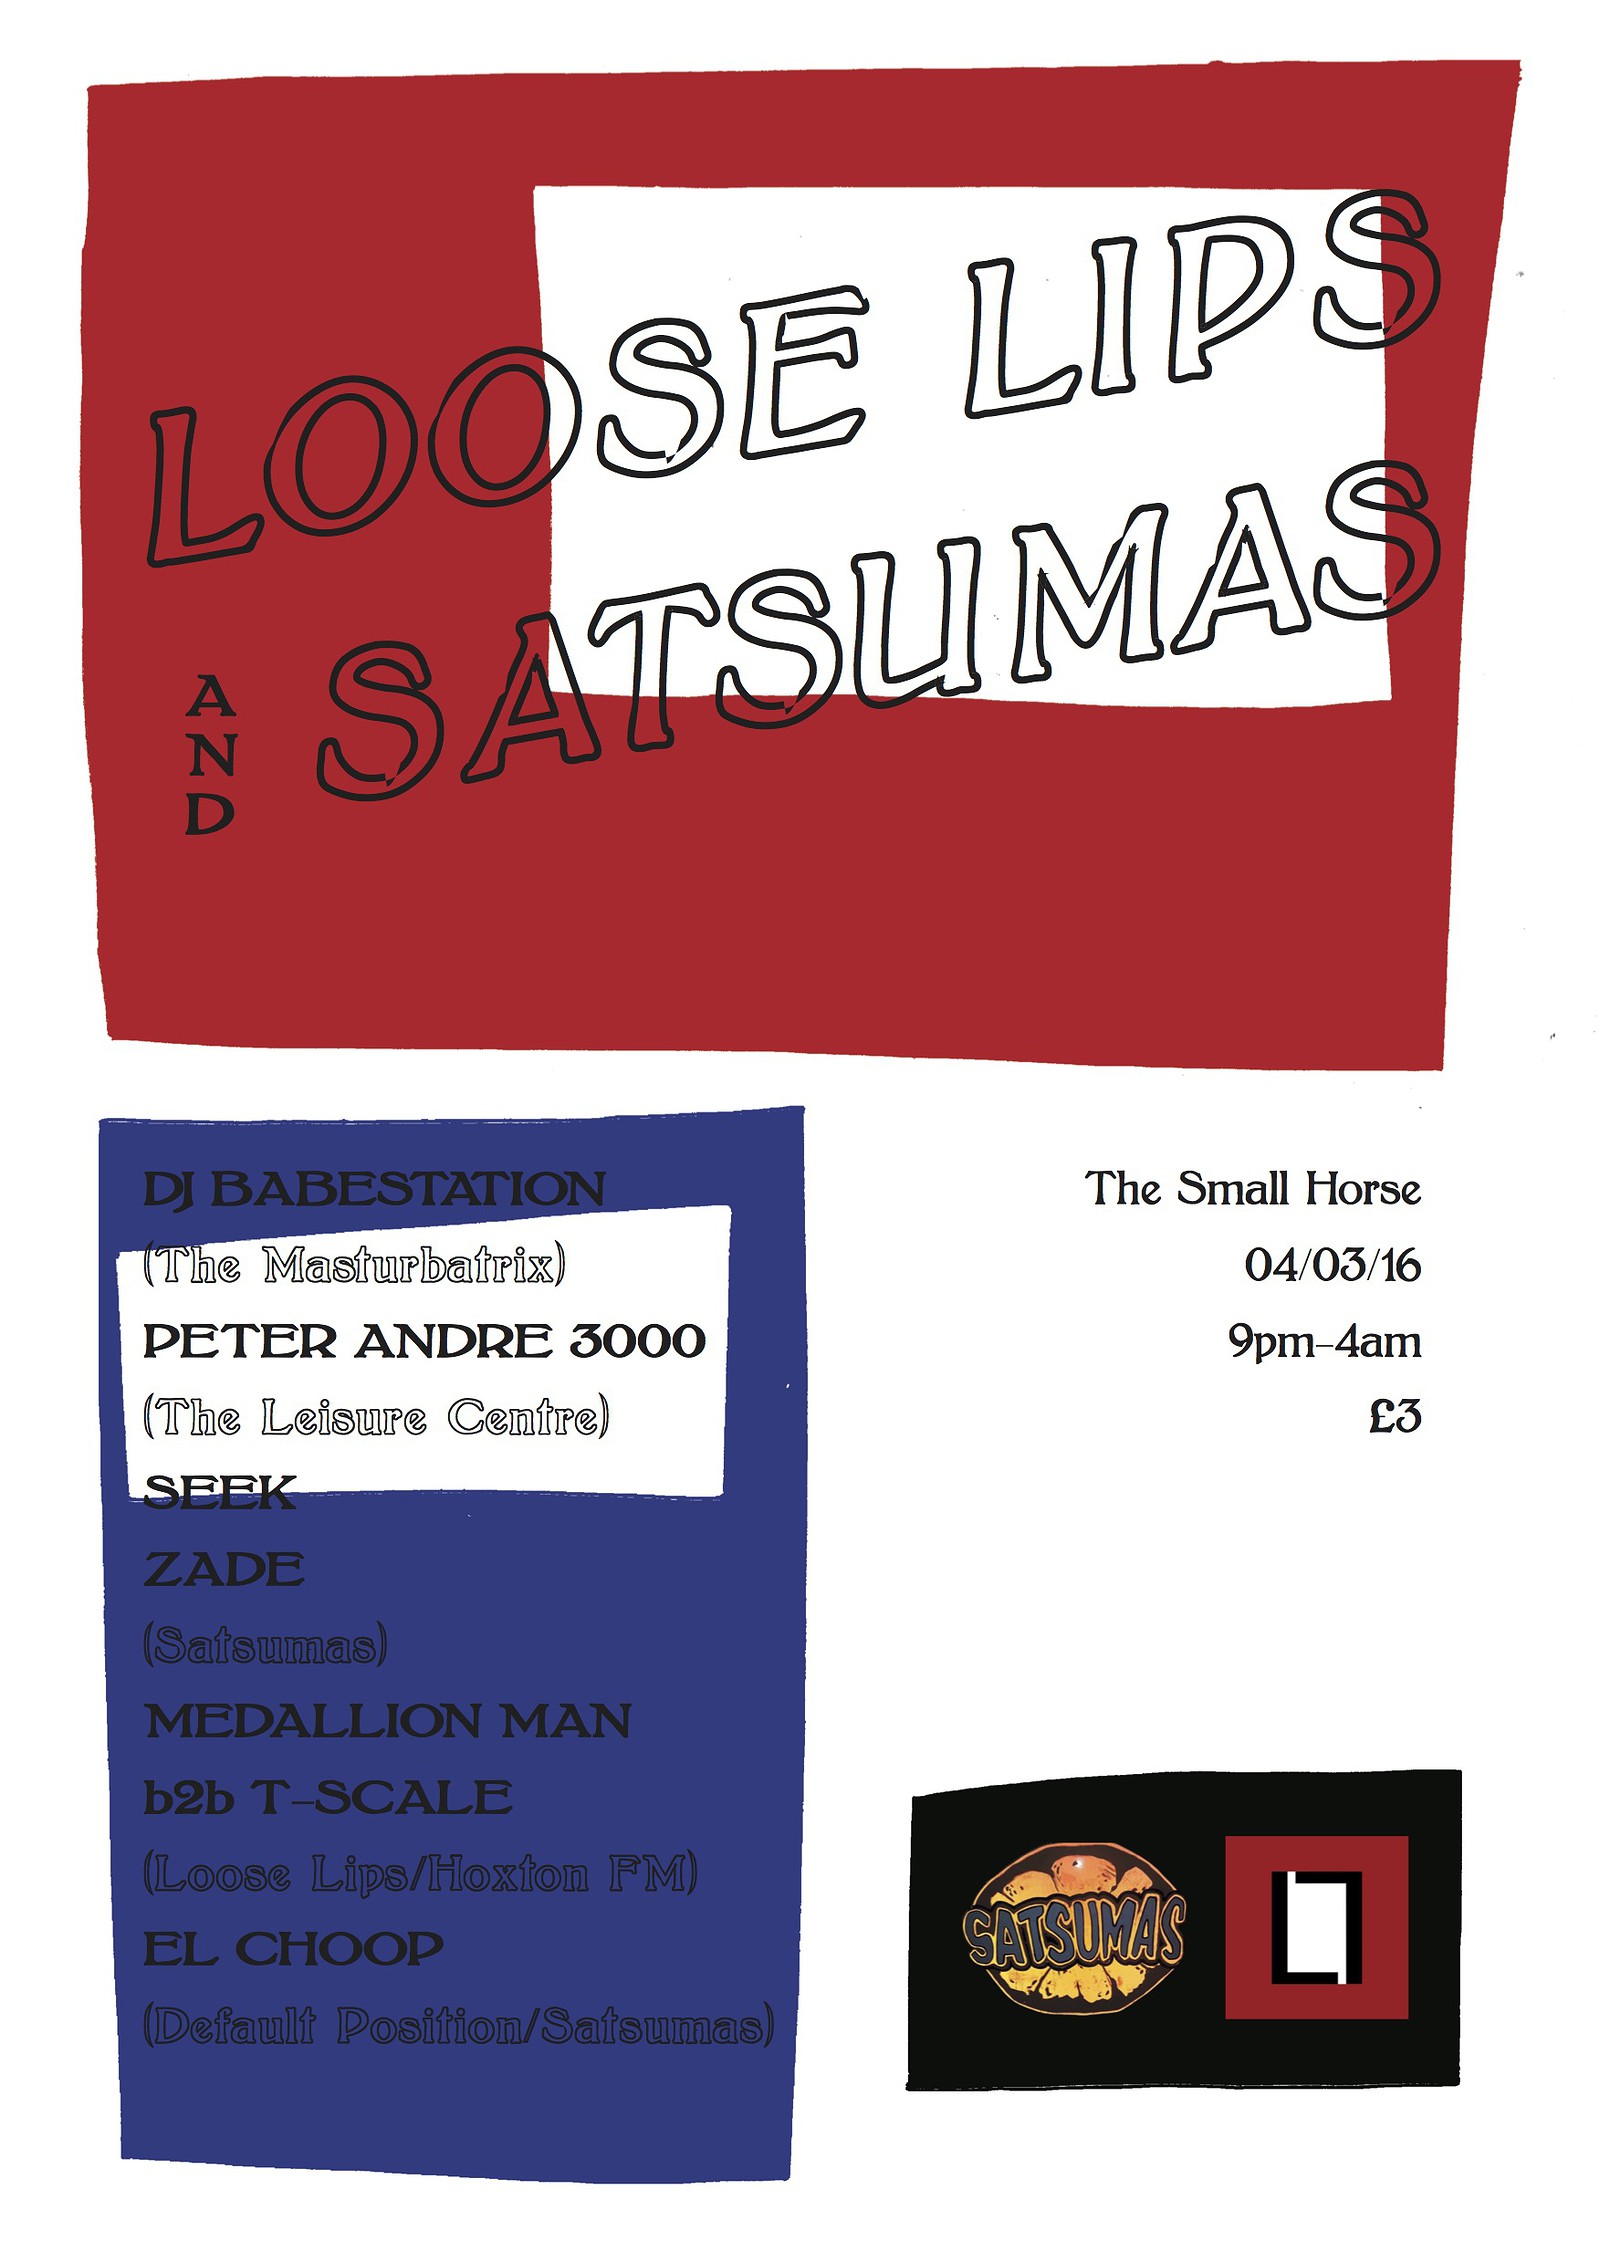 Satsumas X Loose Lips 2 at Small Horse Social Club